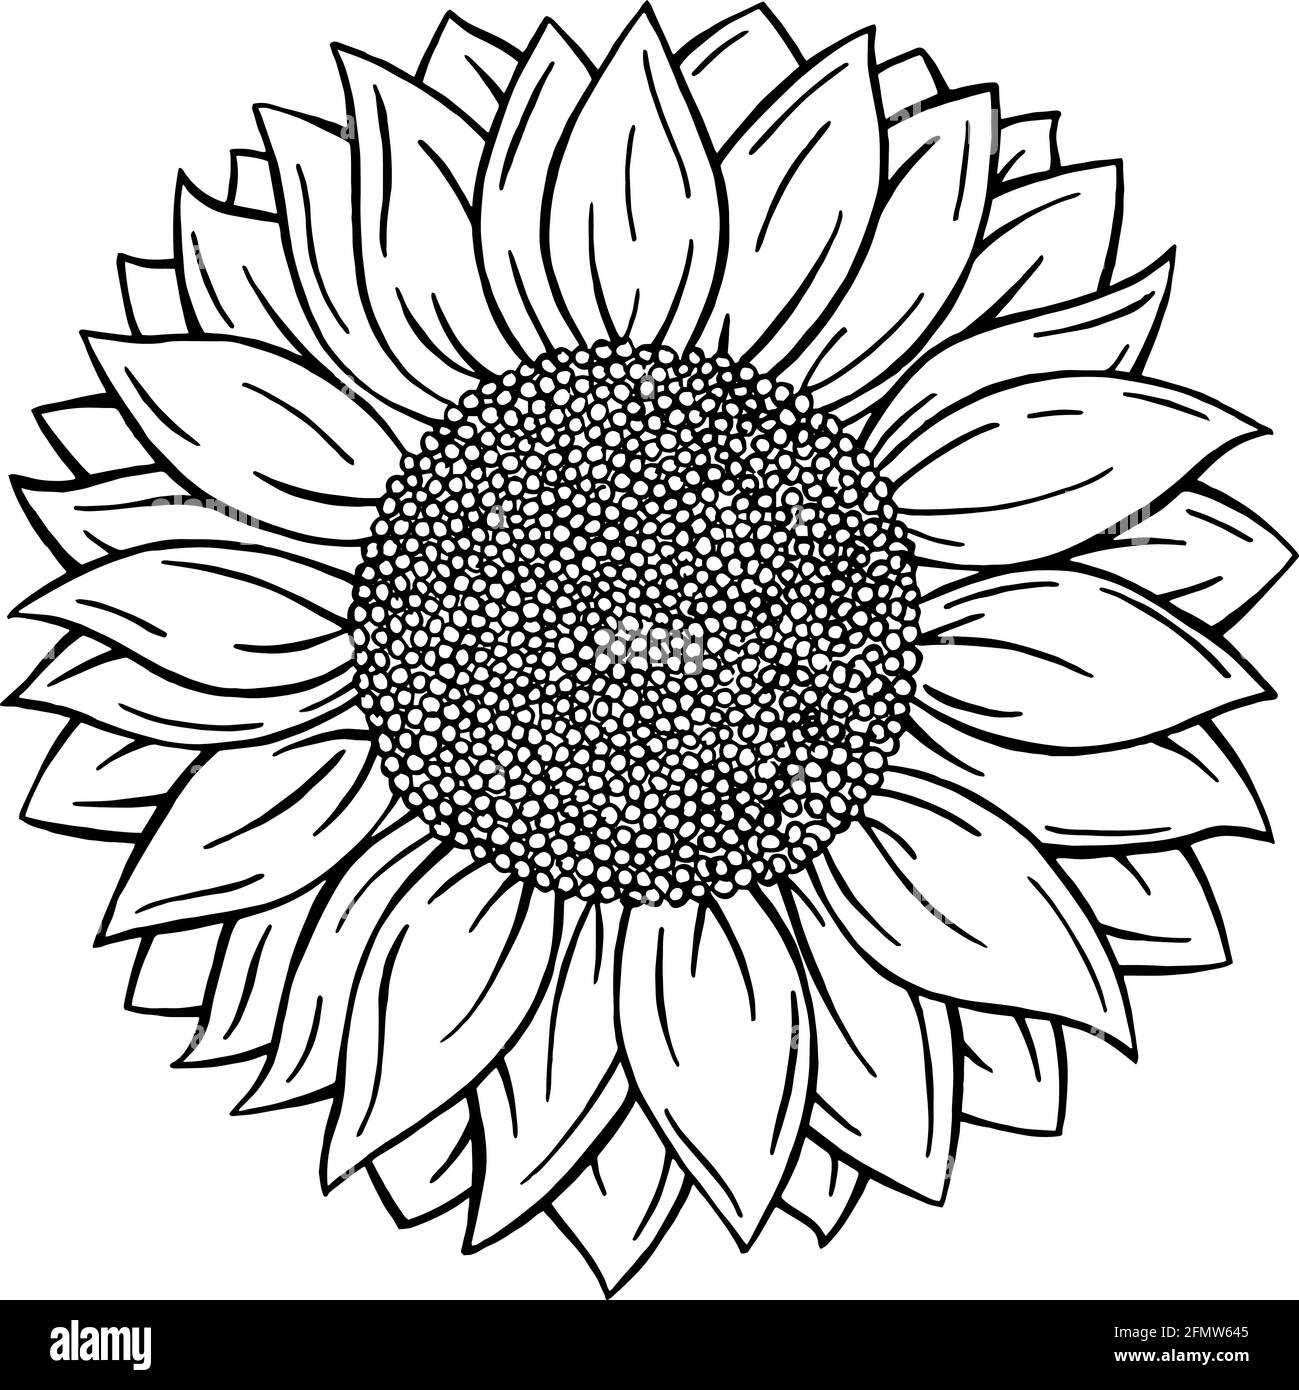 Einfarbig, schwarz und weiß Doodle Stil Sonnenblume isoliert auf weißem Hintergrund. Vektorformat Hand gezeichnete Blume Stock Vektor